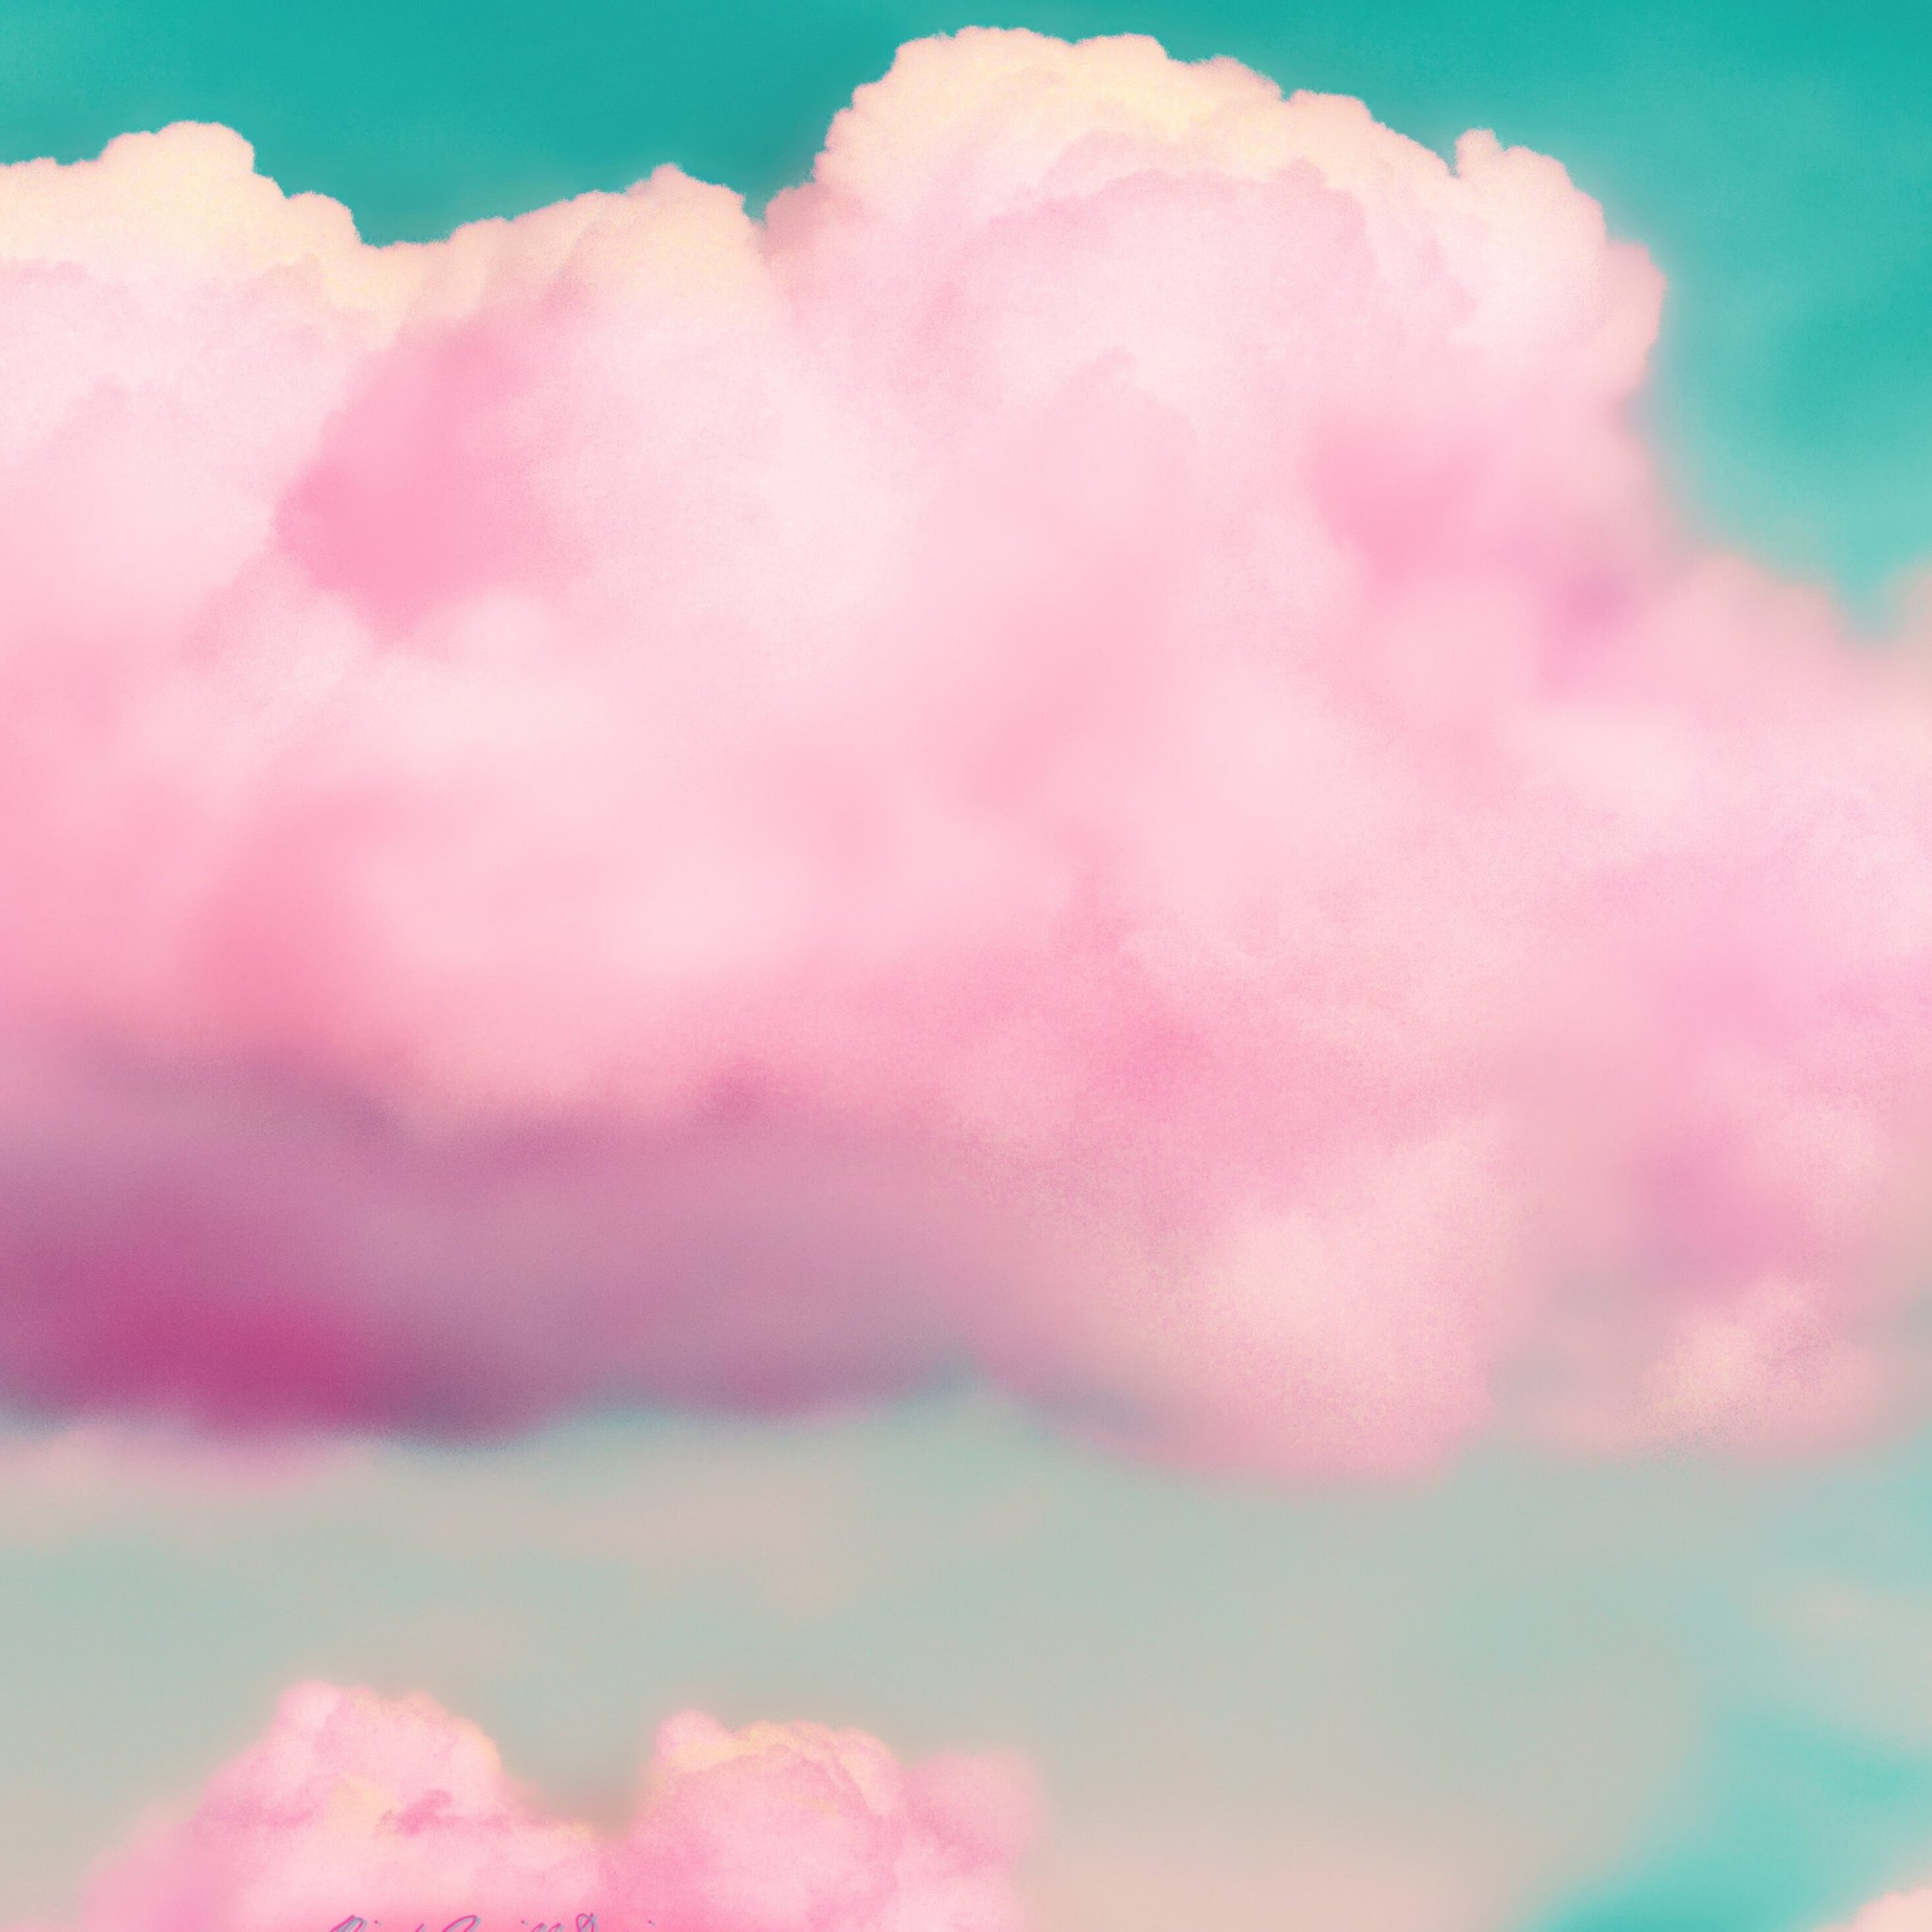 Đưa đôi mắt ngắm nhìn cảnh đẹp như tranh vẽ với hình ảnh mây hồng phủ kín bầu trời. Hãy khám phá sự kỳ diệu của thiên nhiên và cảm nhận cảm xúc bình yên và hạnh phúc mà màu hồng mang lại.